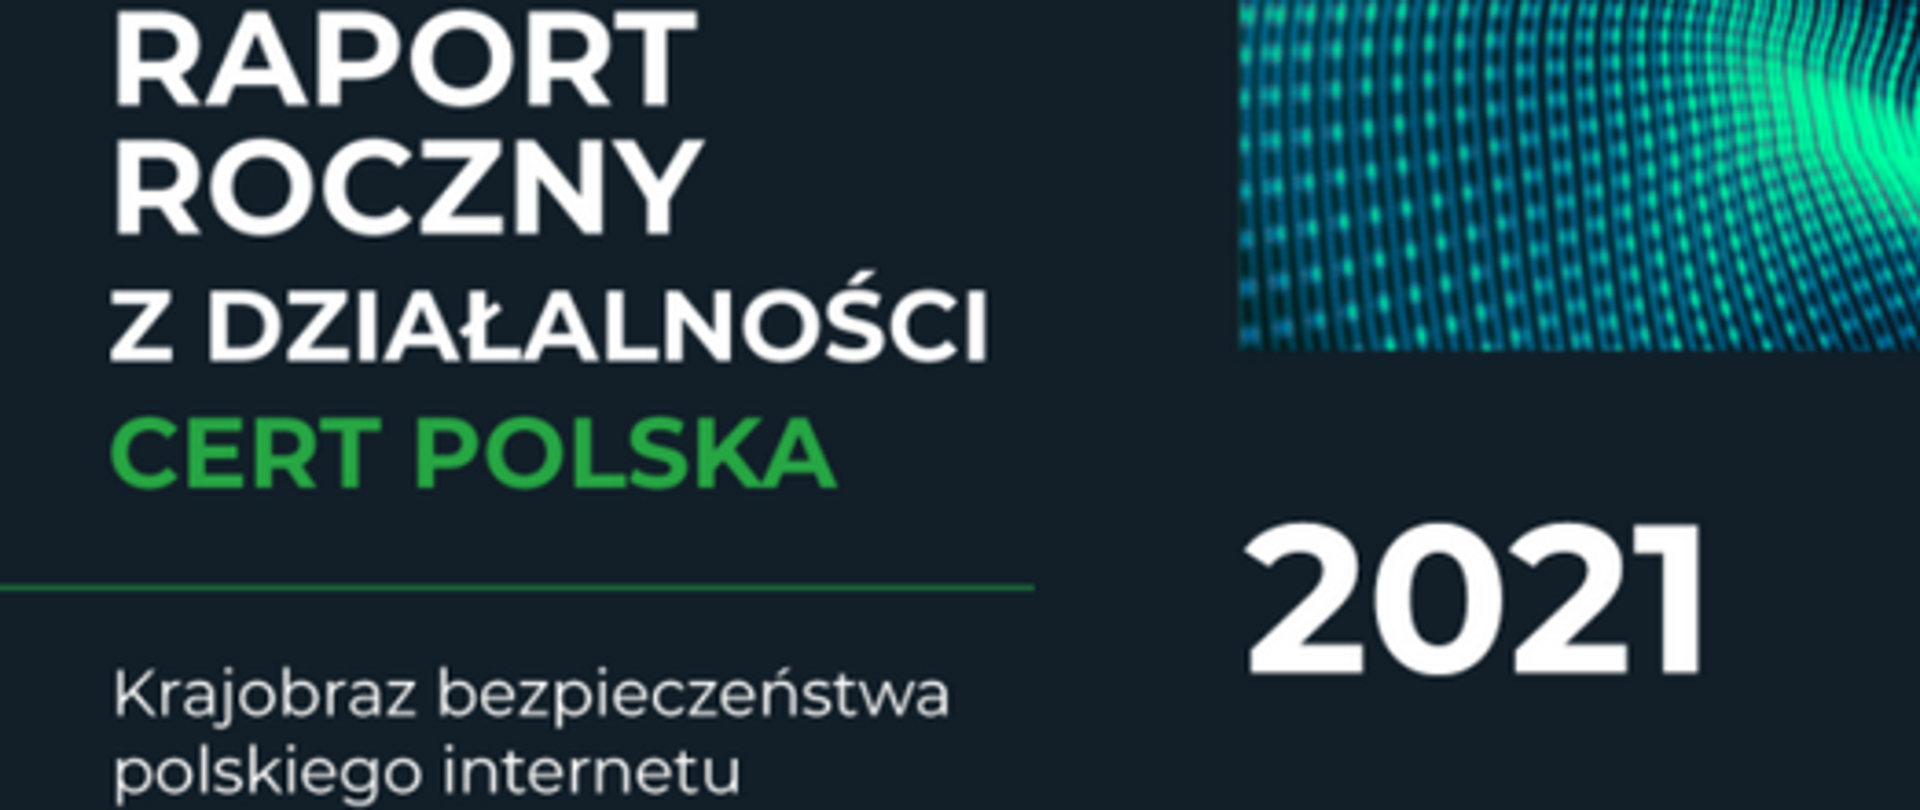 roczny raport z działalności cert polska mówiący o krajobrazie bezpieczeństwa polskiego internetu